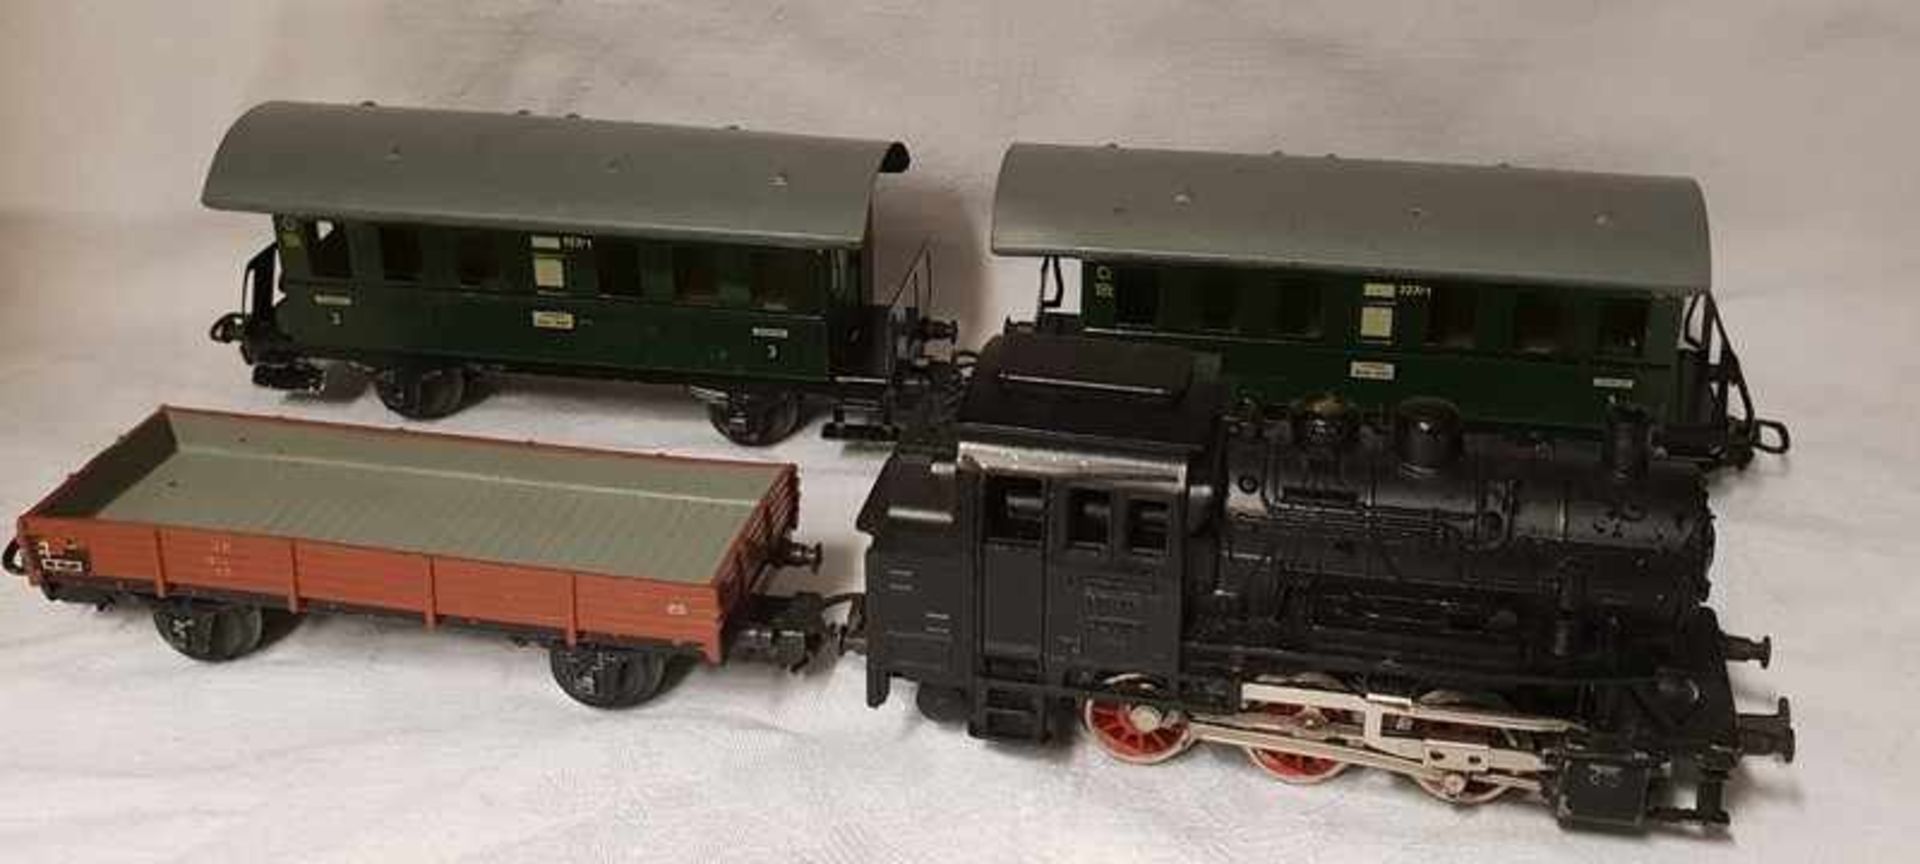 Märklin Dampflokomotive mit 3 Waggons, bestehend aus:1 Märklin CM 800 Lokomotive 890282 Märklin